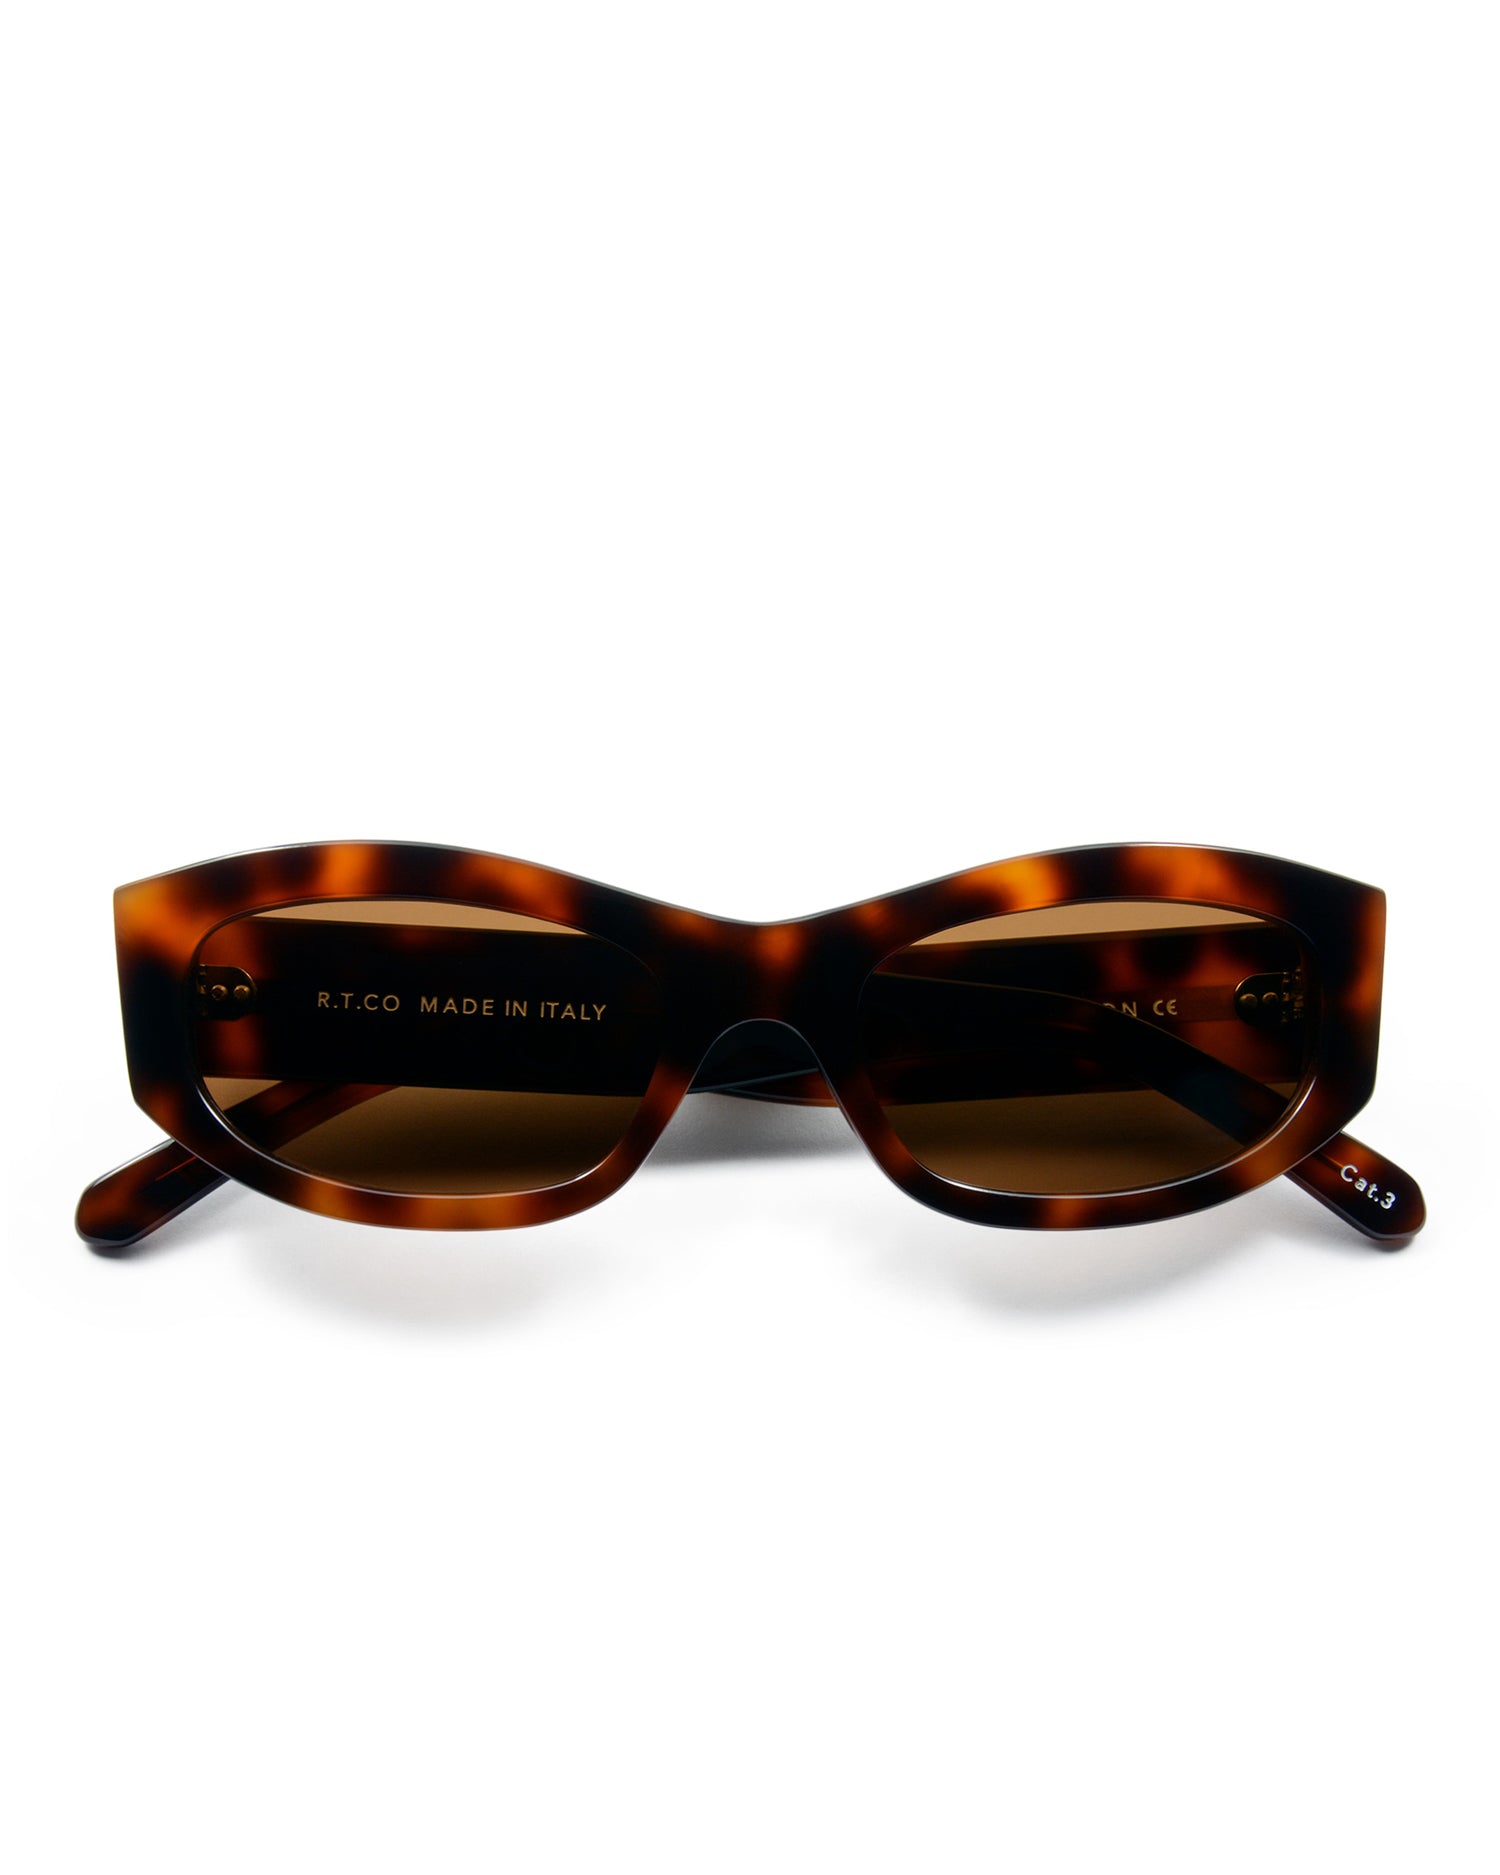 S.P.A. / R.T.CO Astore Sunglasses - Montego